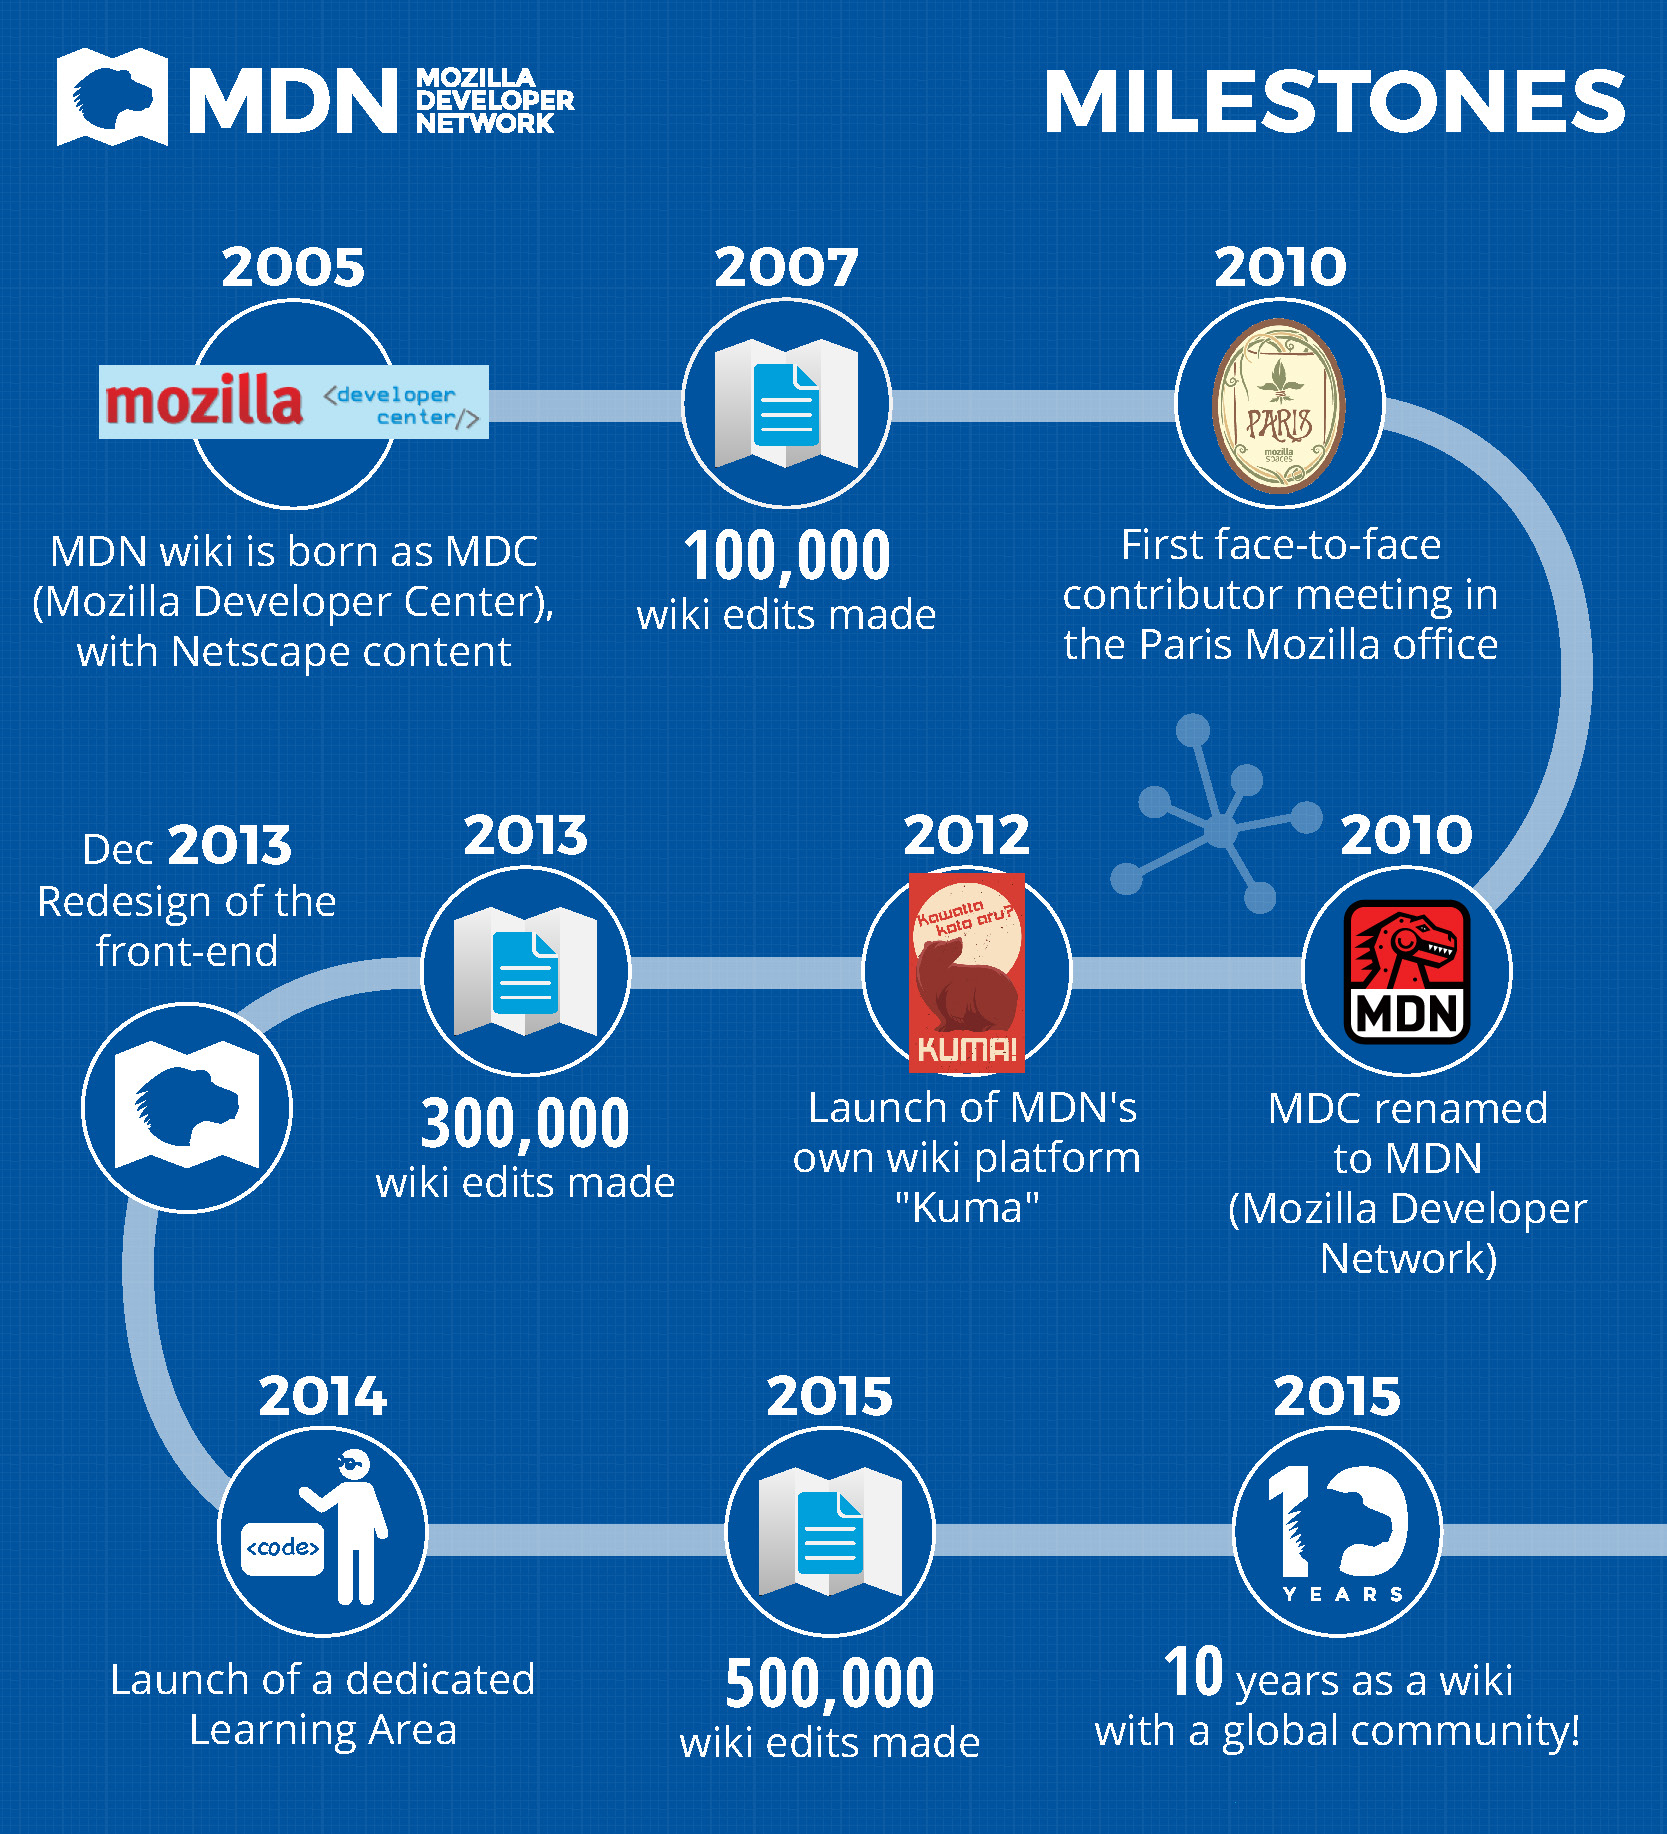 Mozilla Developer Network oslavila 10 let od svého spuštění